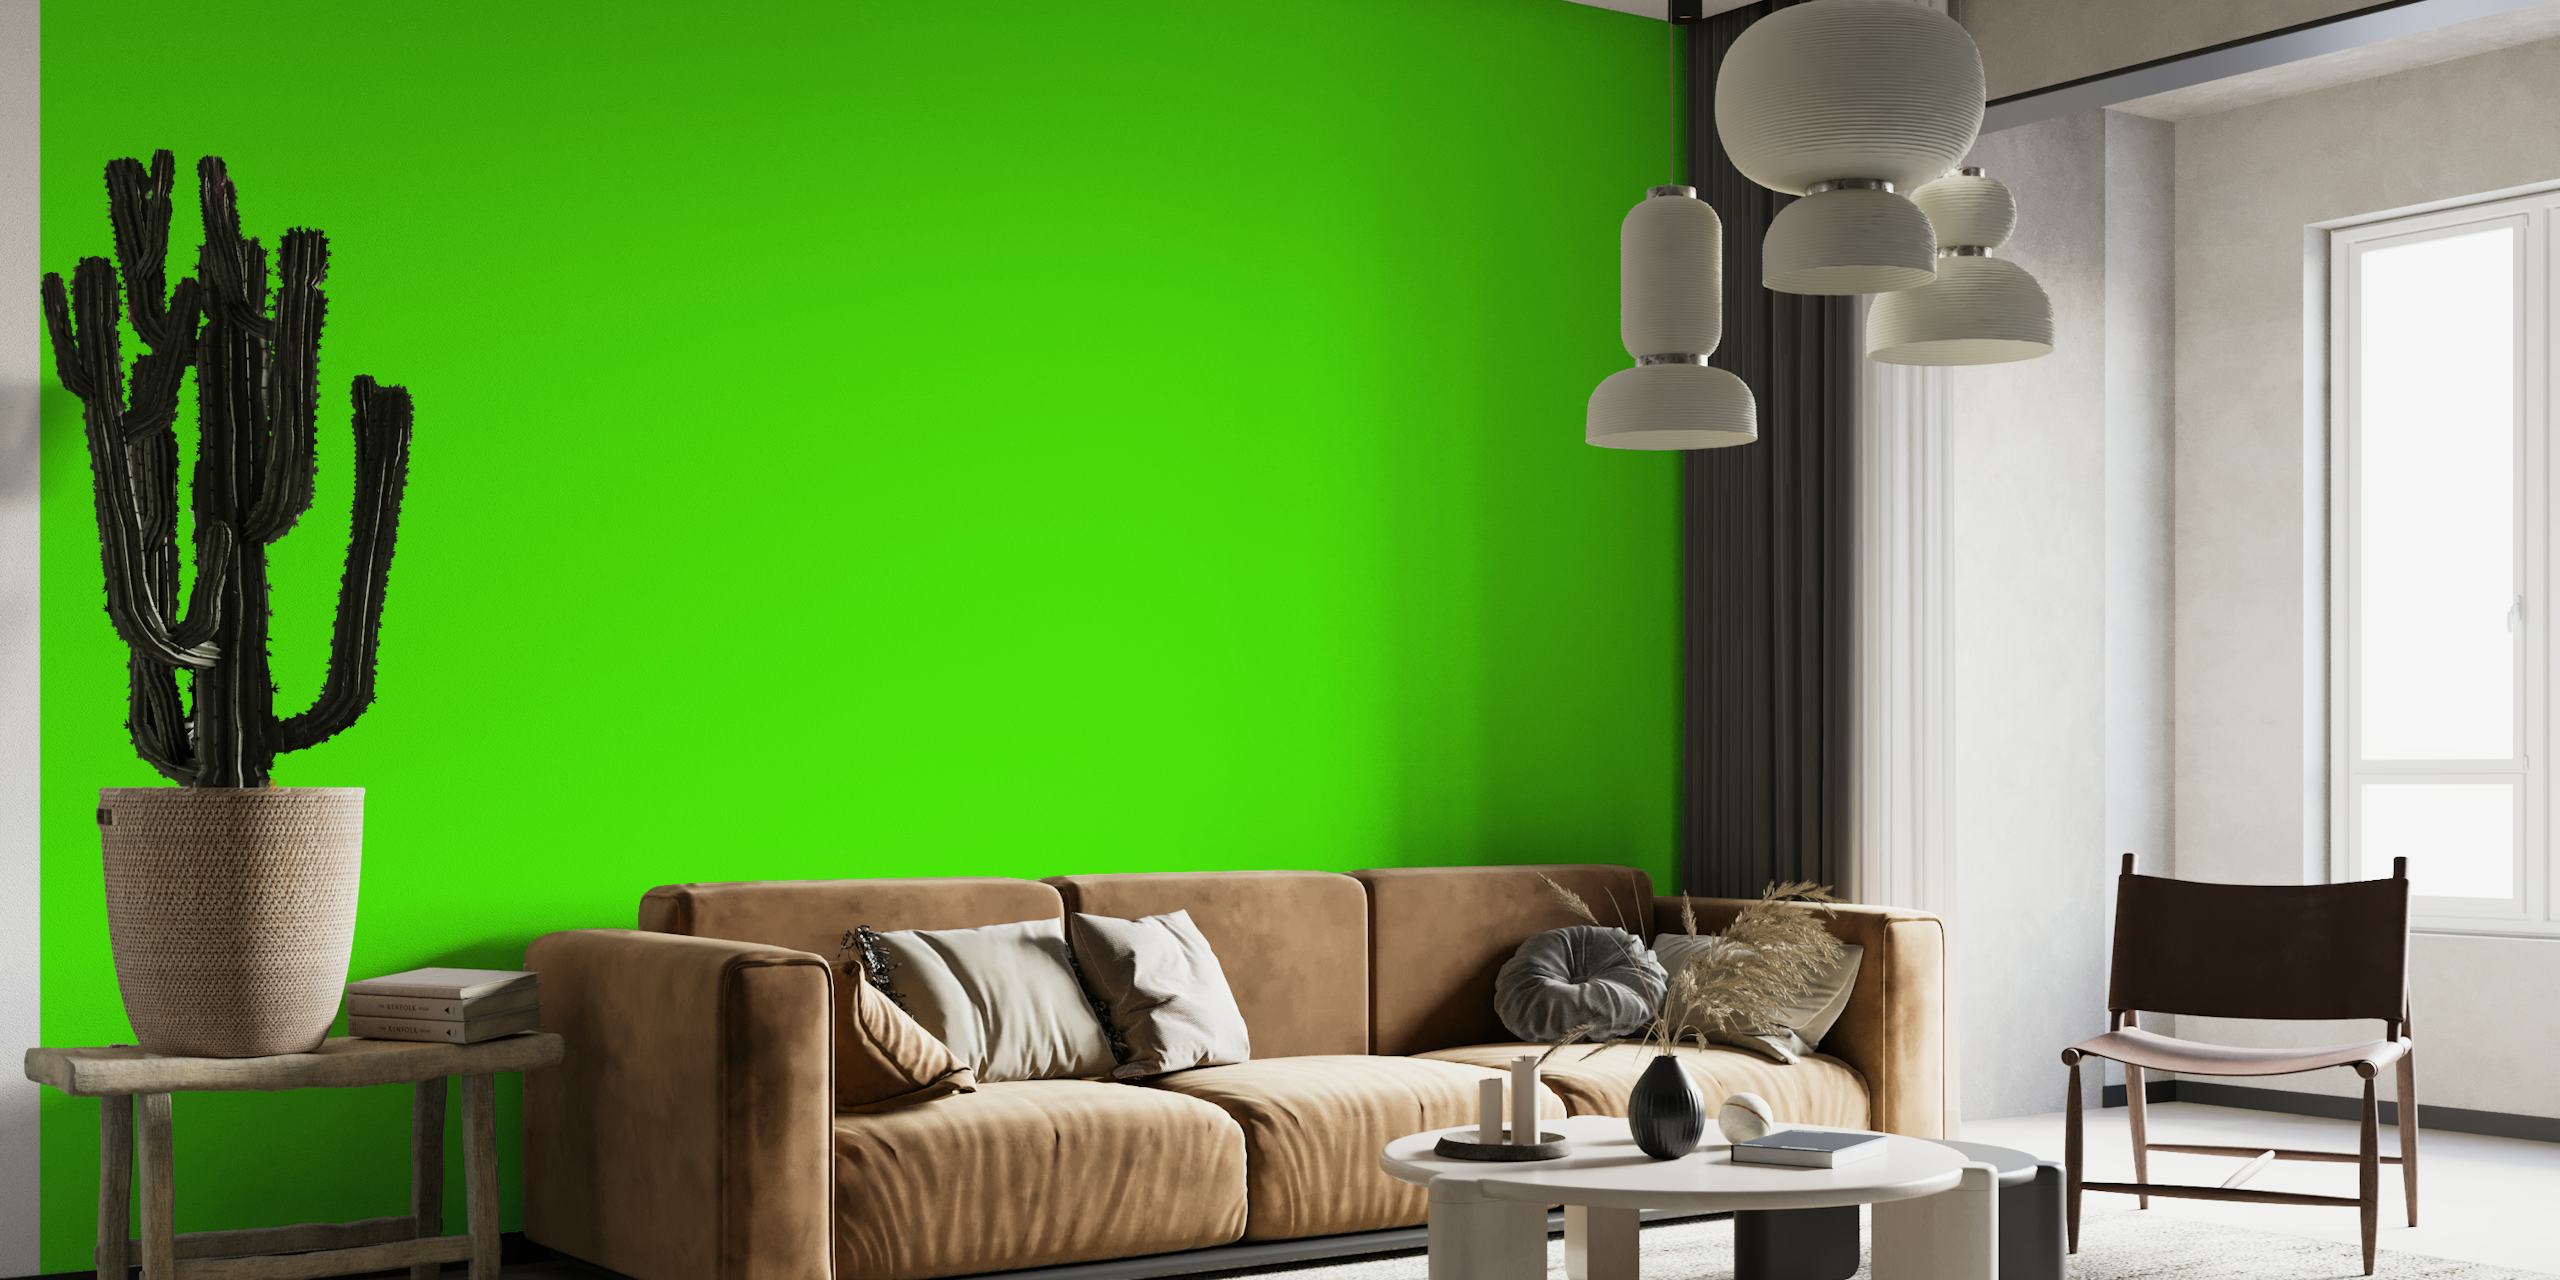 Mural de parede verde vibrante criando uma atmosfera inspirada na natureza